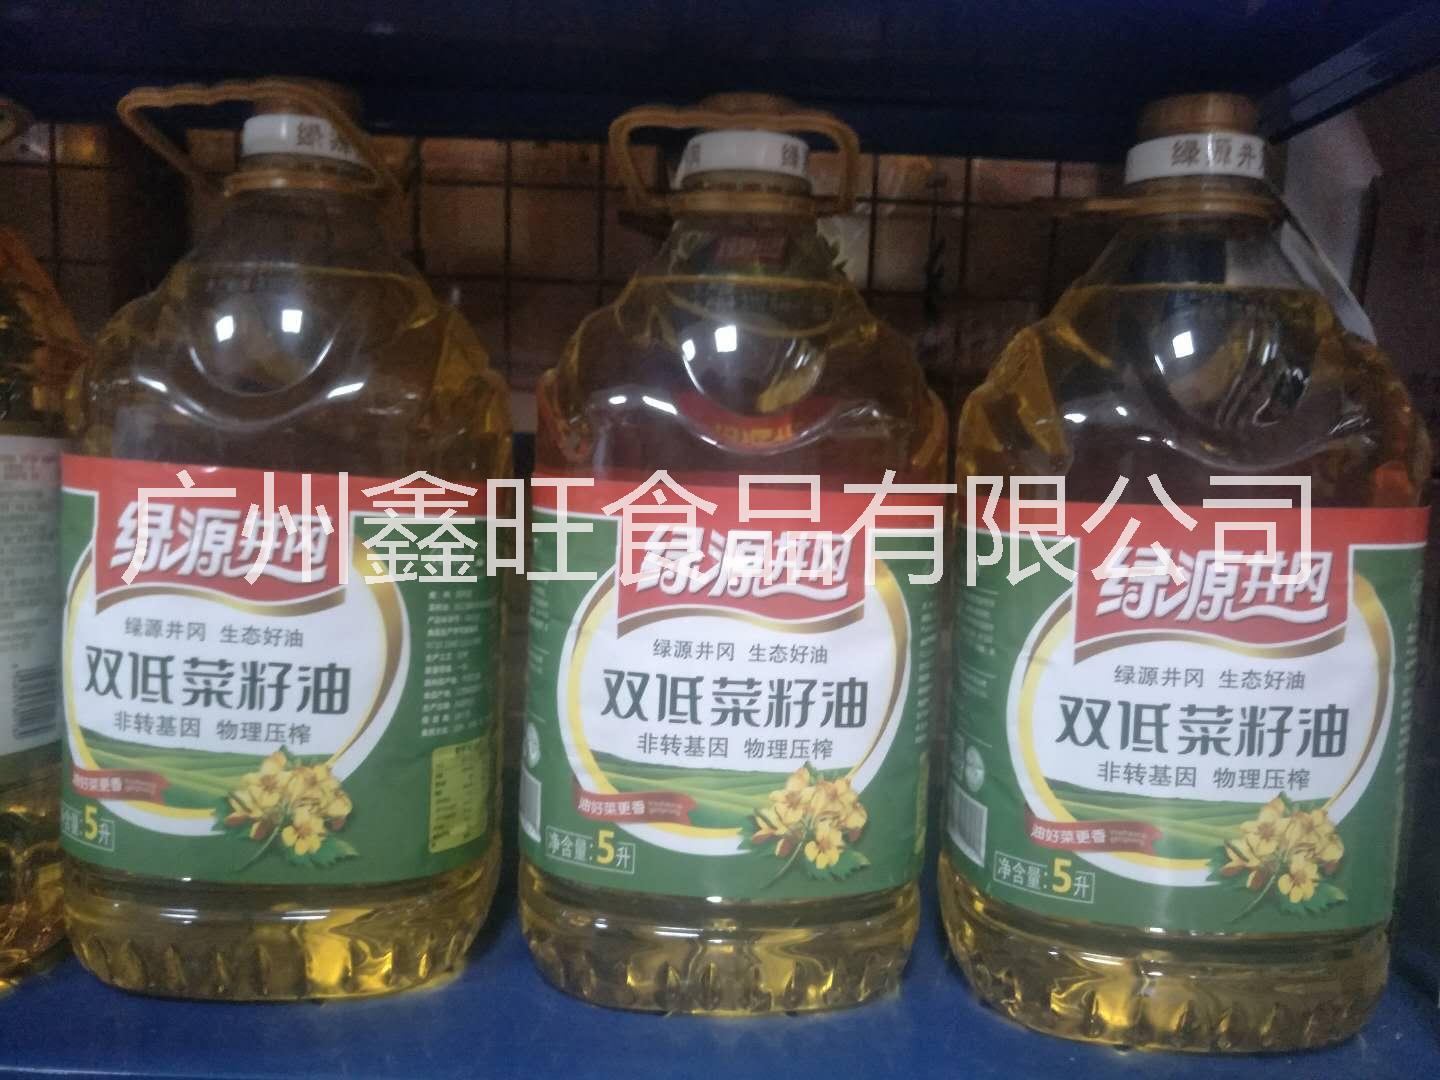 菜籽油        菜籽油供应商       菜籽油的功效         菜籽油的价格